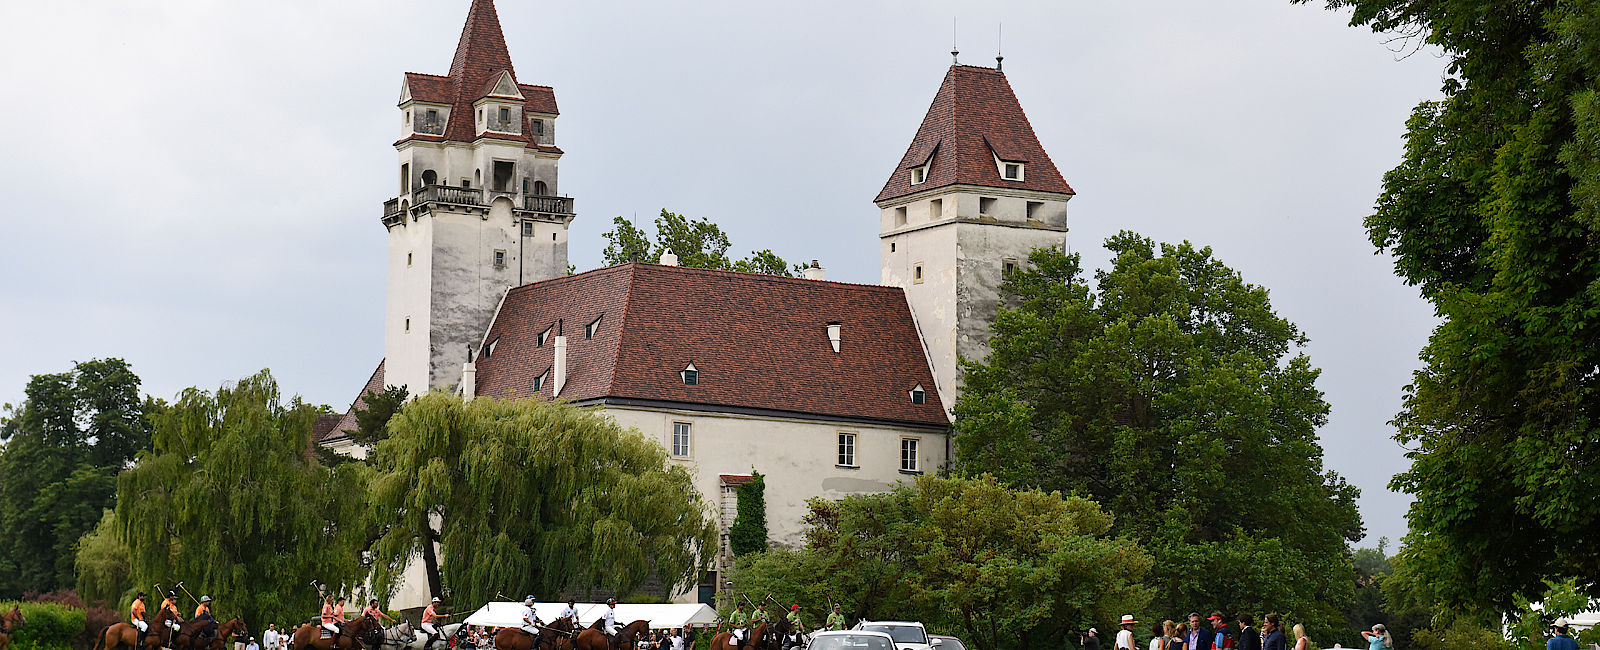 WEITERE NEWS
 Hochkarätige Spiele bei Schloss Ebreichsdorf 
